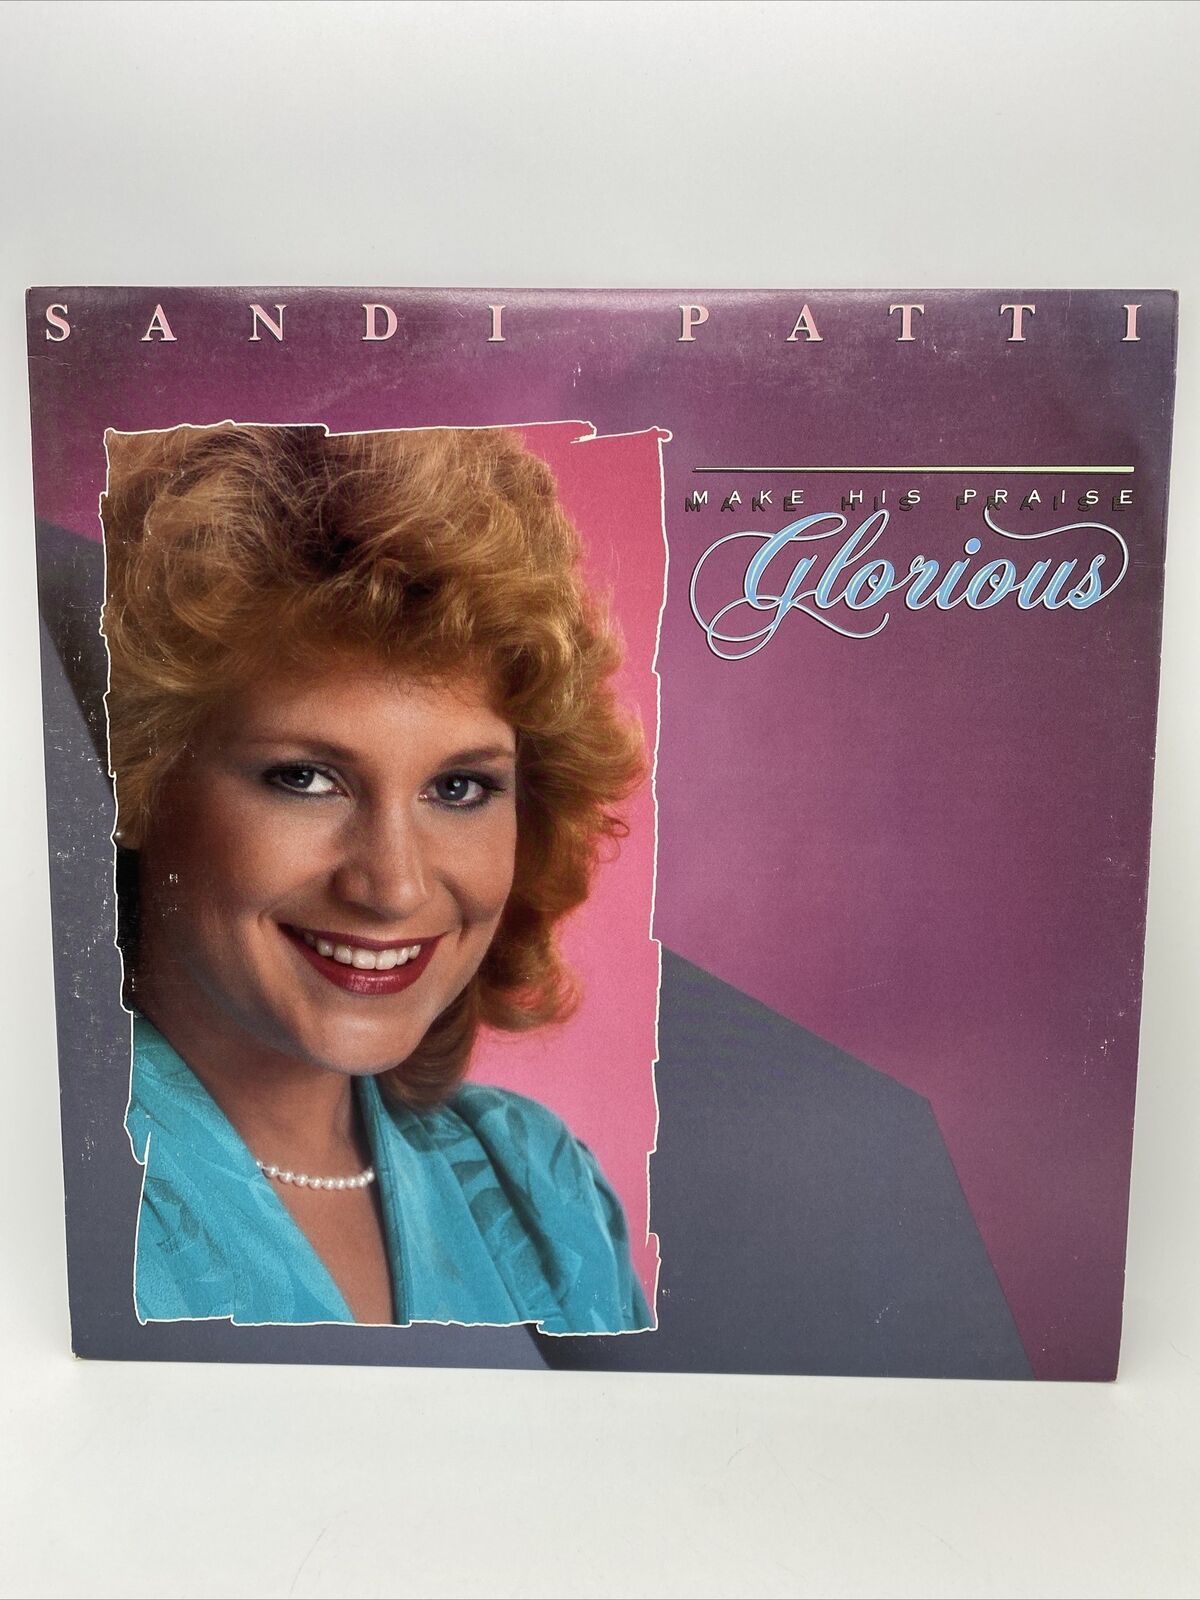 Sandi Patti Make His Praise Glorious LP 1988 A&M Records PROMO Vinyl 